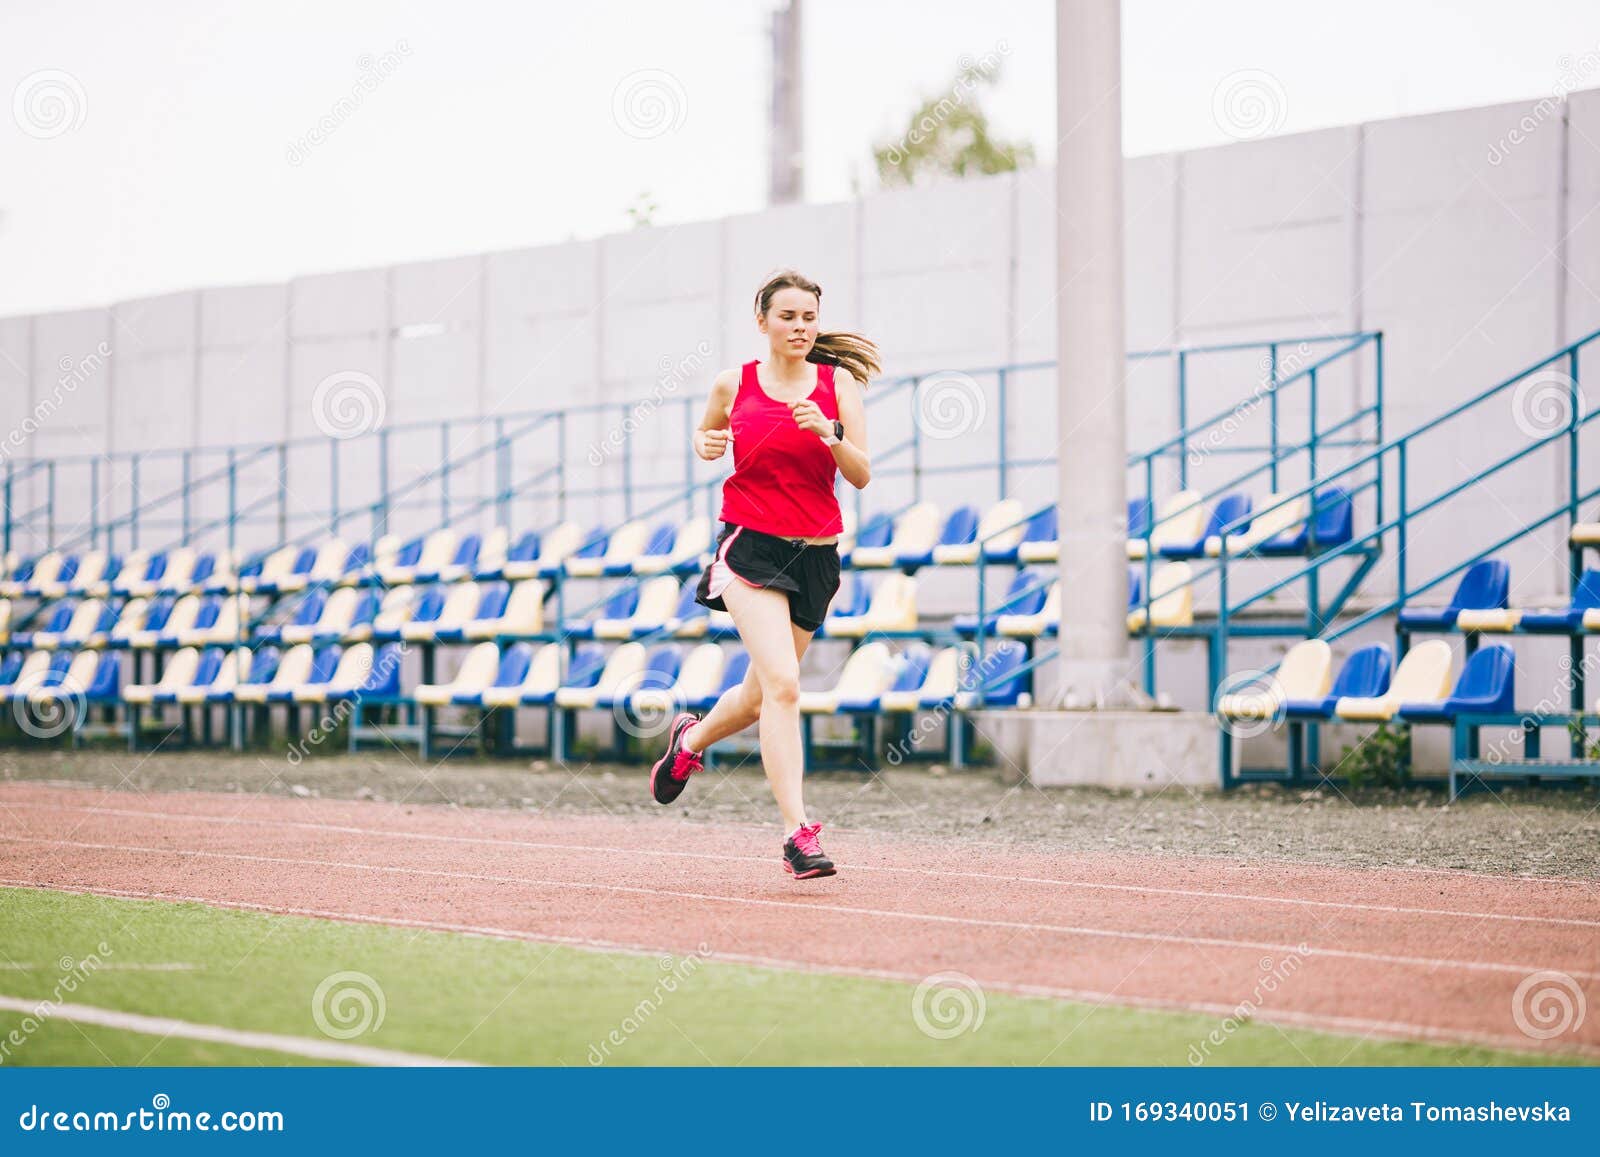 100米短跑的一组运动员照片摄影图片_ID:150382360-Veer图库